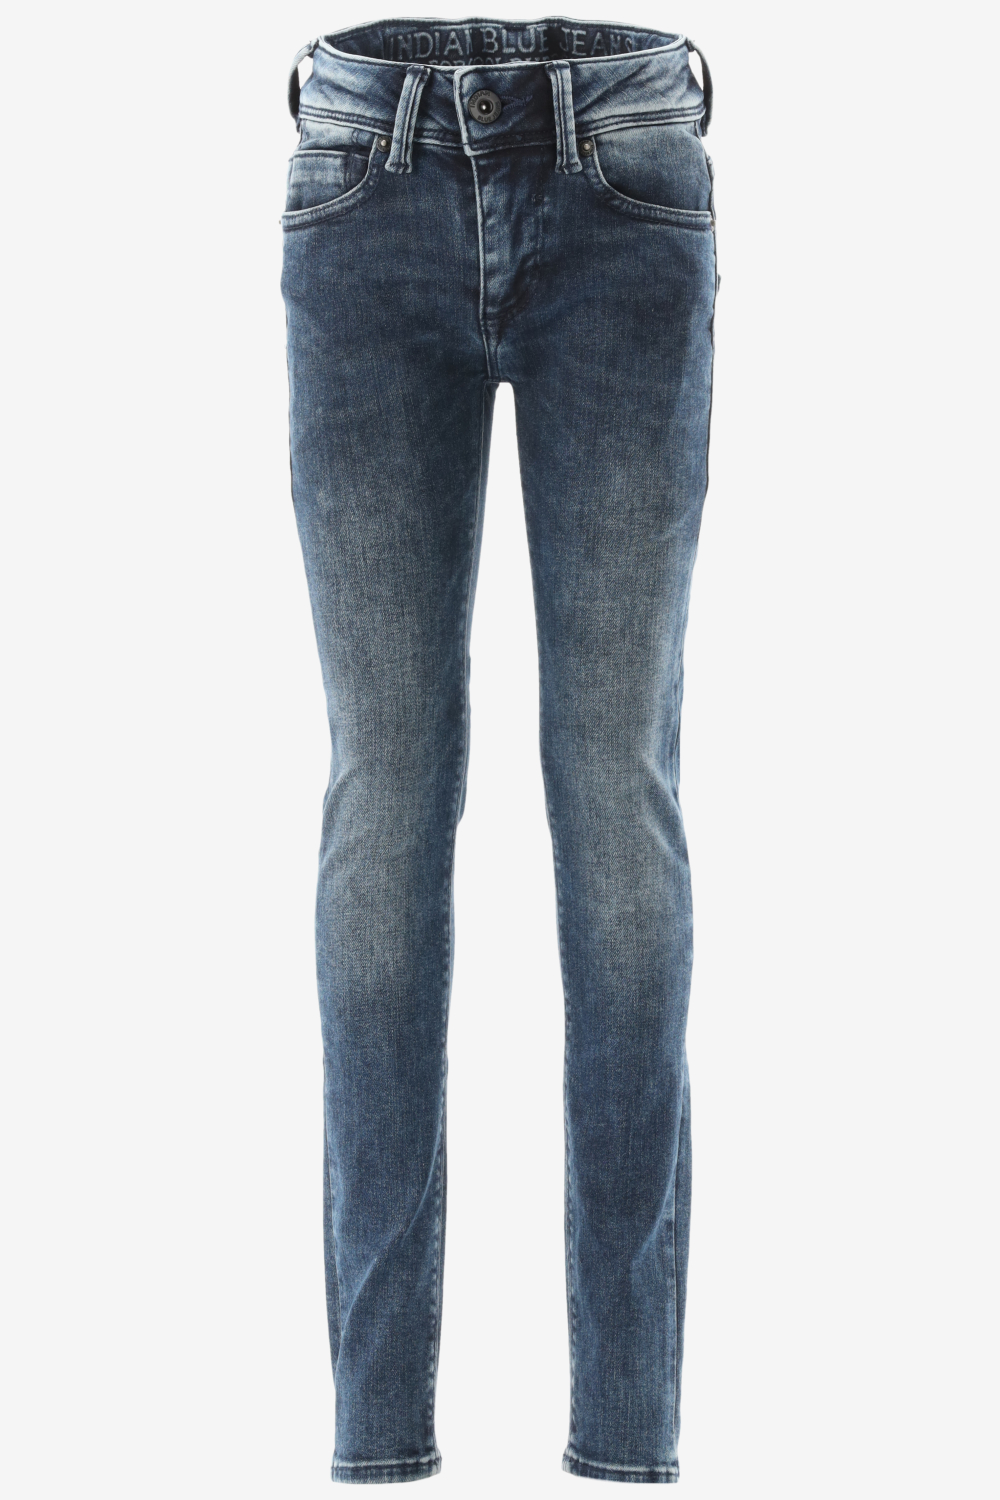 Indian Blue Jeans Jeans jongen blue black maat 164